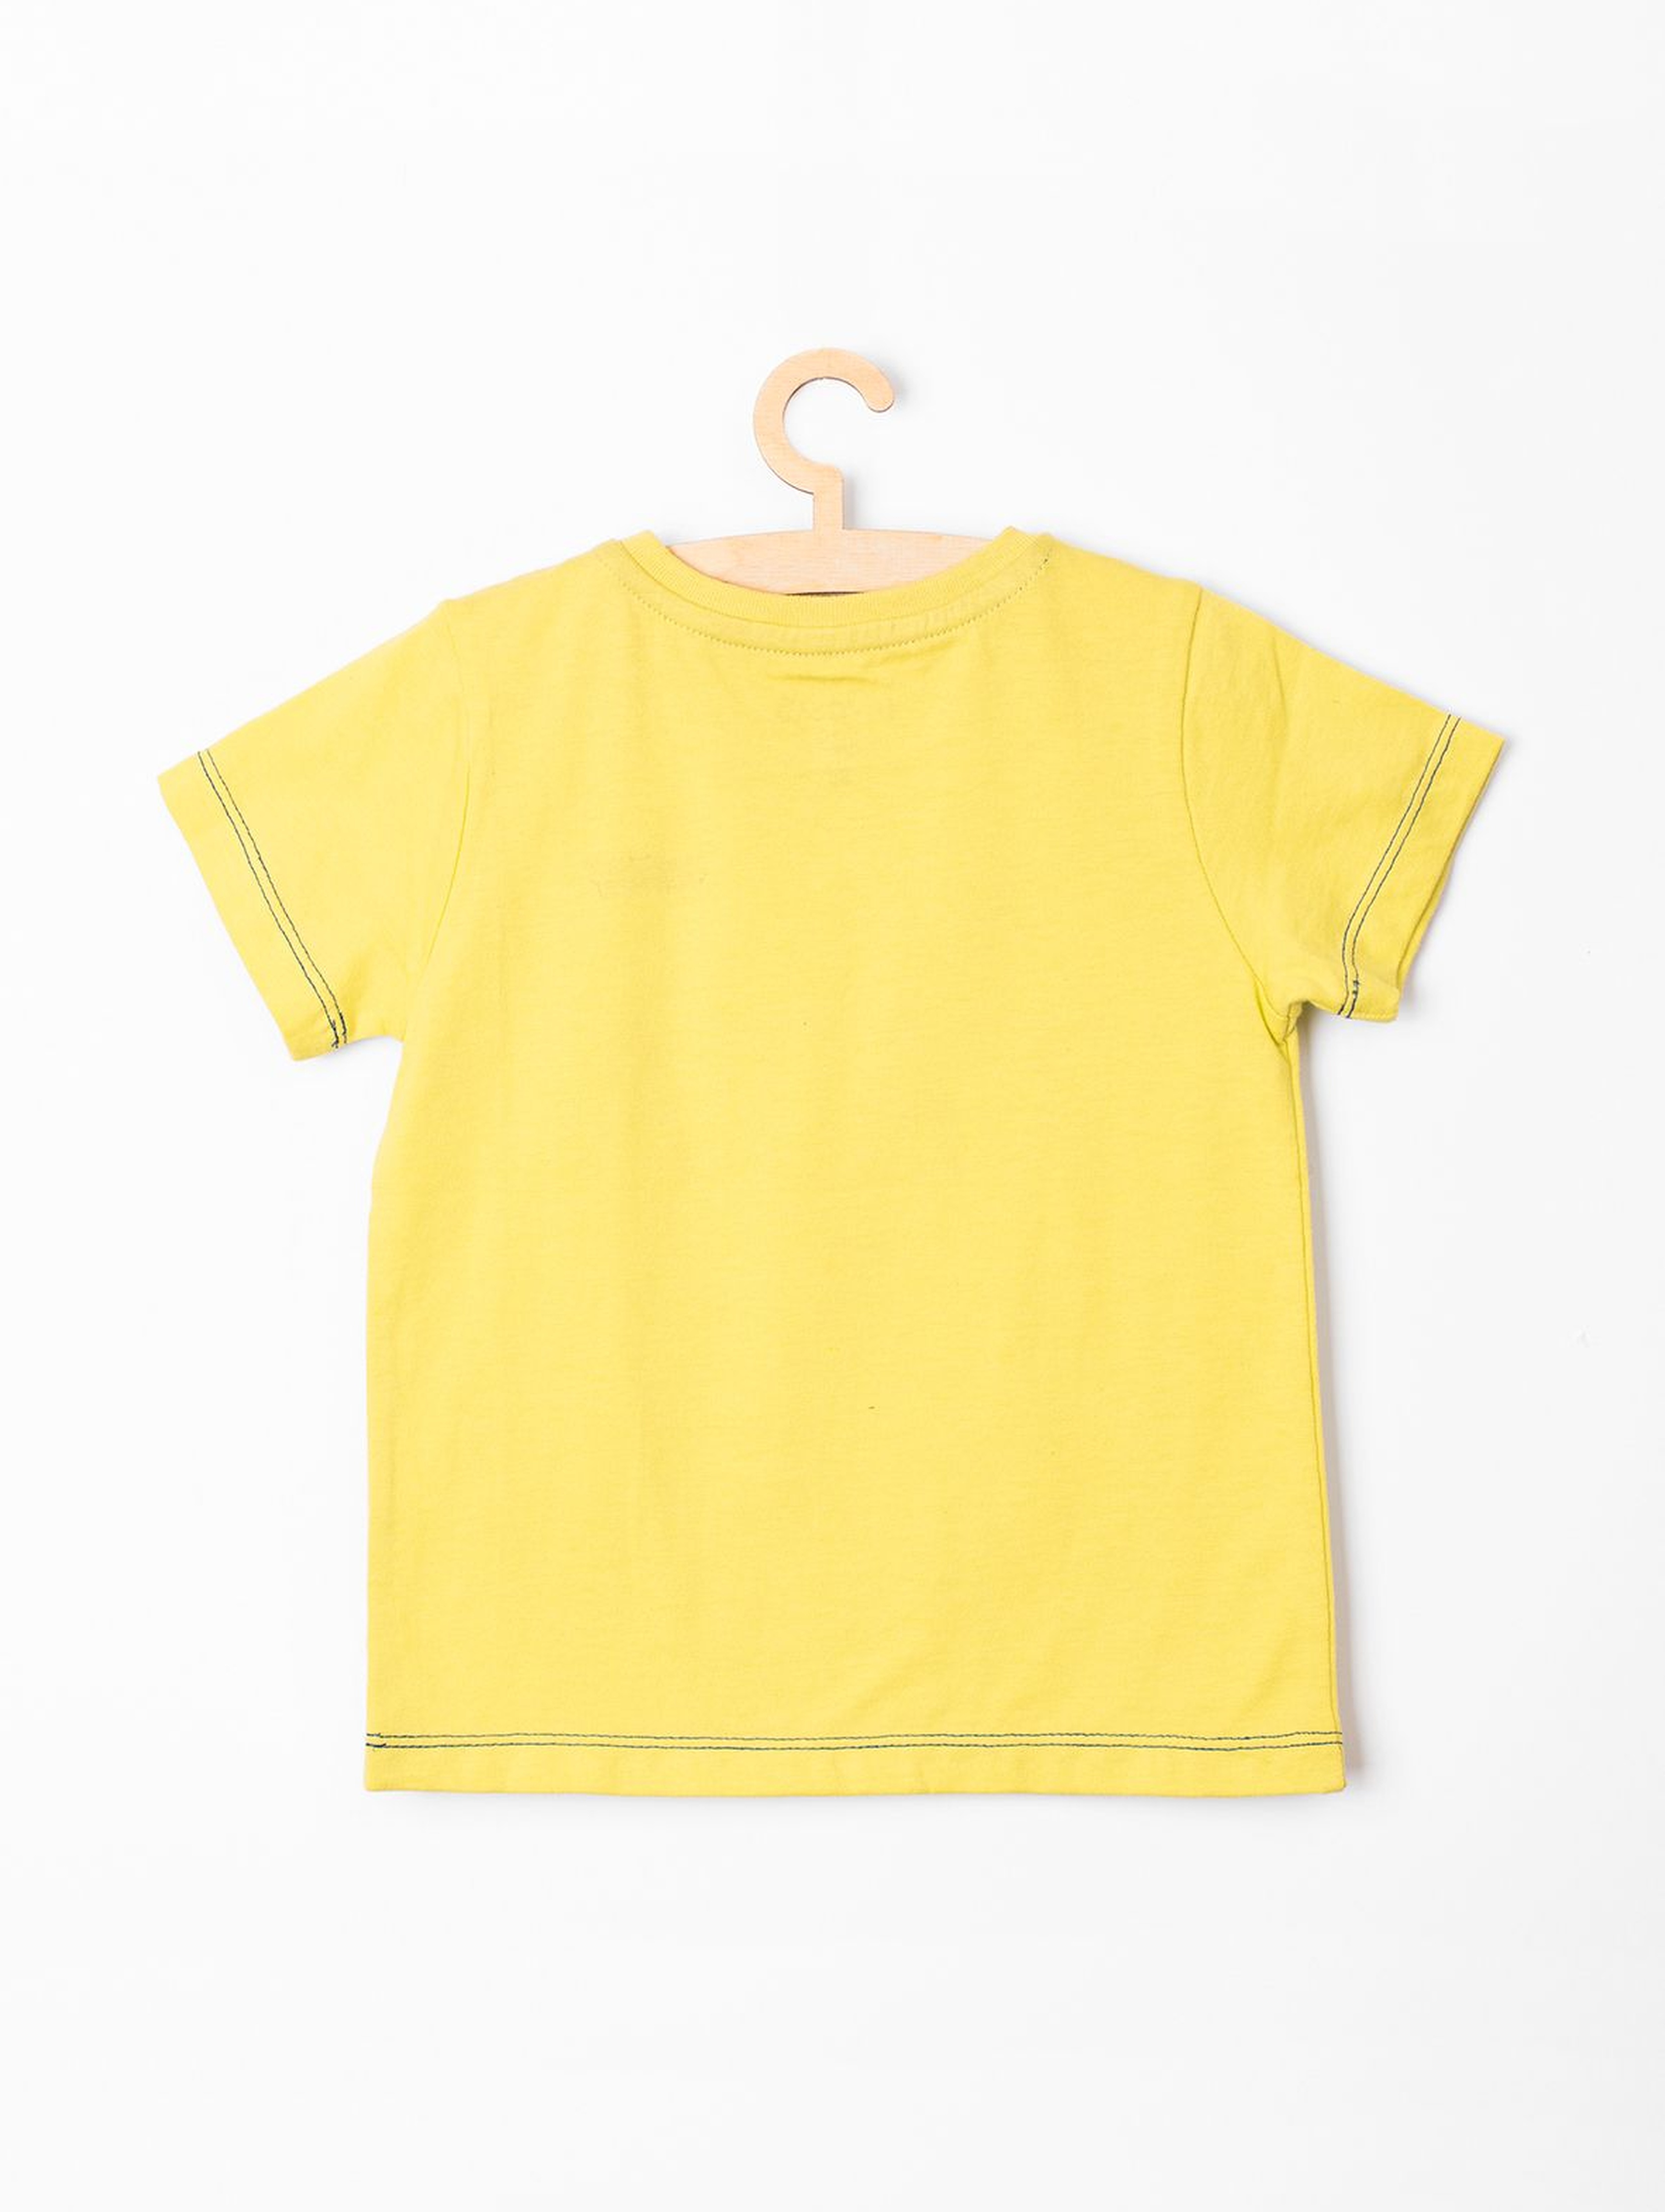 T-shirt niemowlęcy żółty "Mini Tata"